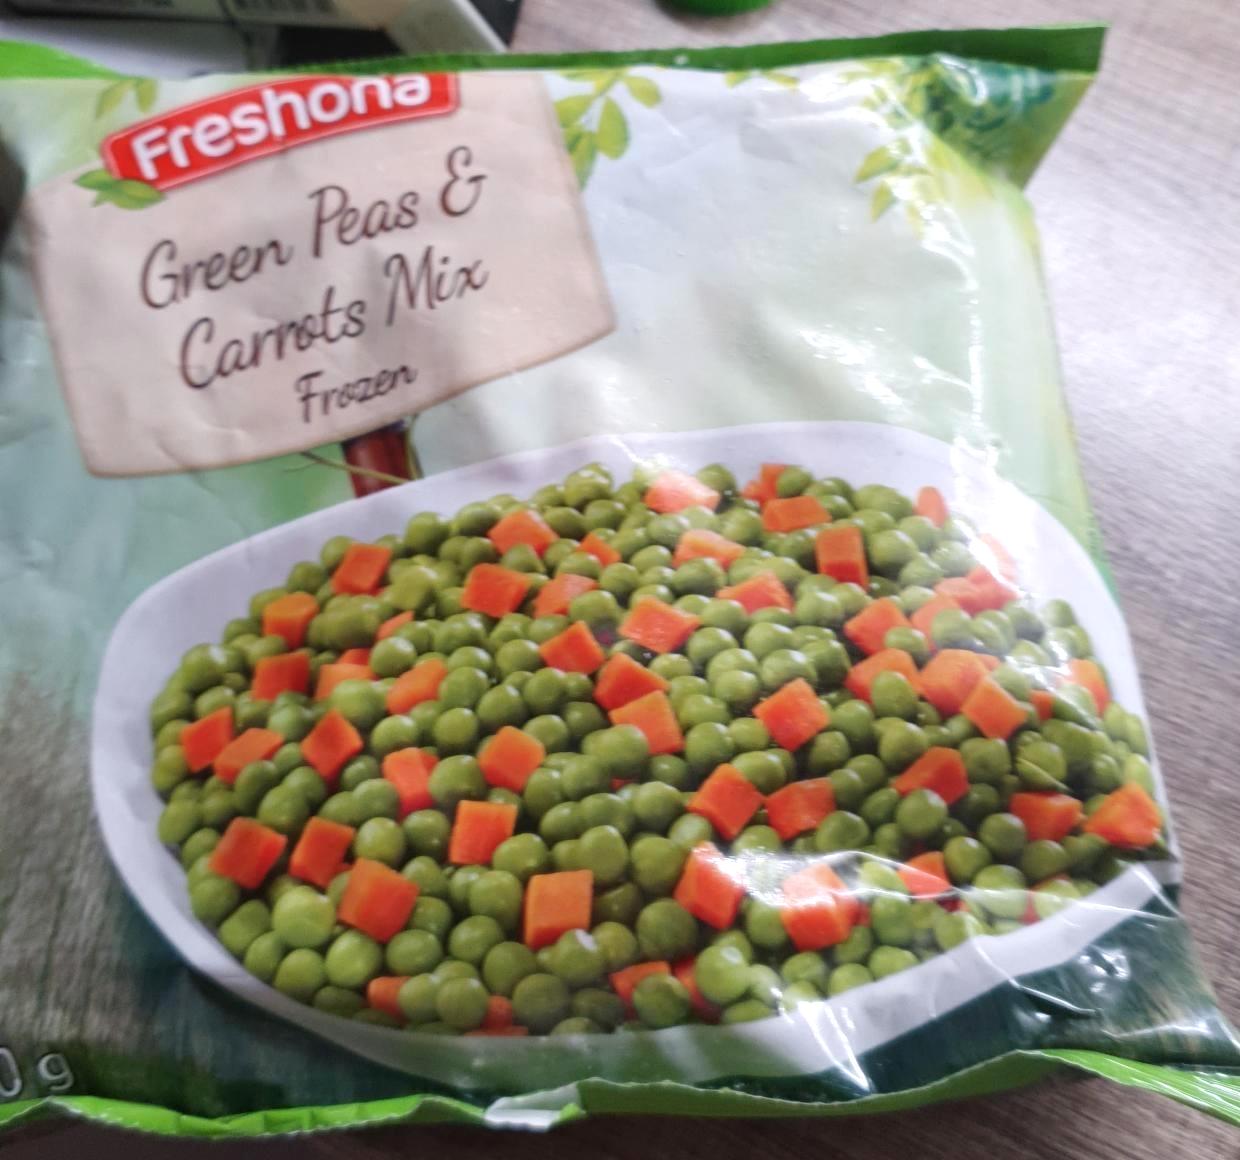 Képek - Green peas & carrots mix Freshona